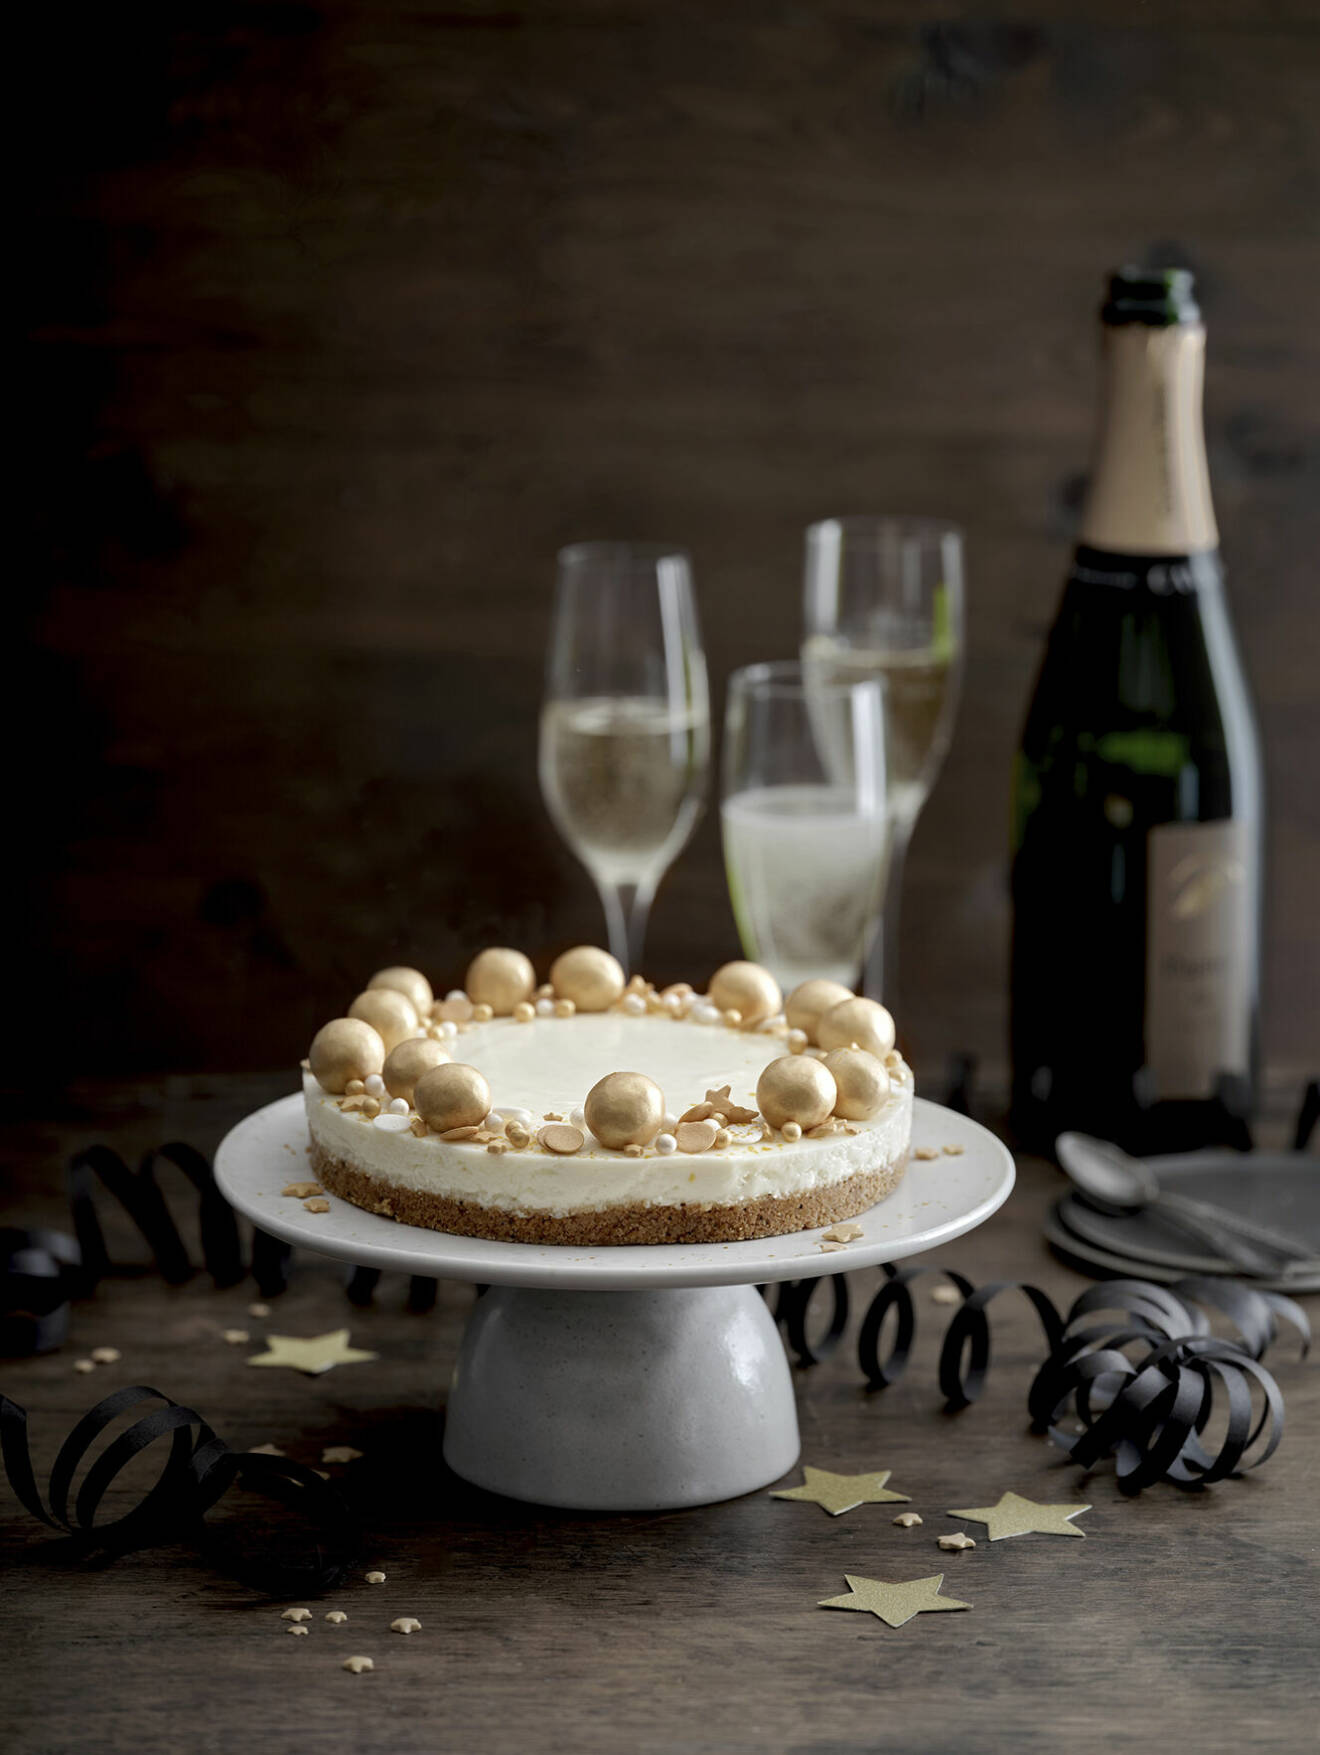 Avsluta med stil – cheesecake med champagne och lakrits